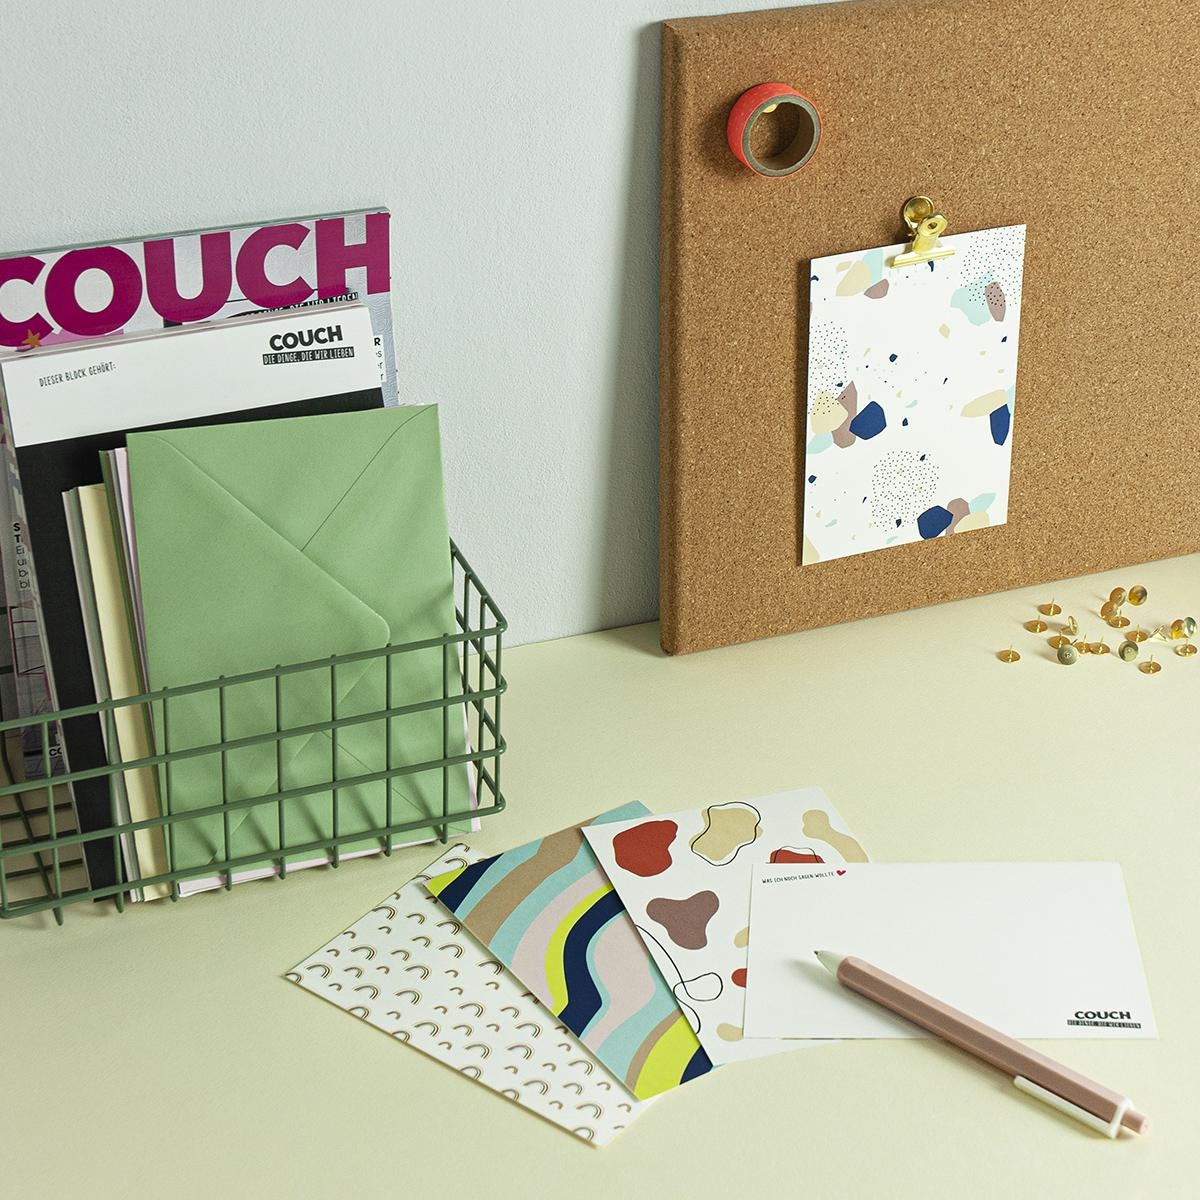 SMS kann jeder! Verschickt doch mal wieder Grüße per Post – zum Beispiel mit dem Postkartenset von #couchpaperlove